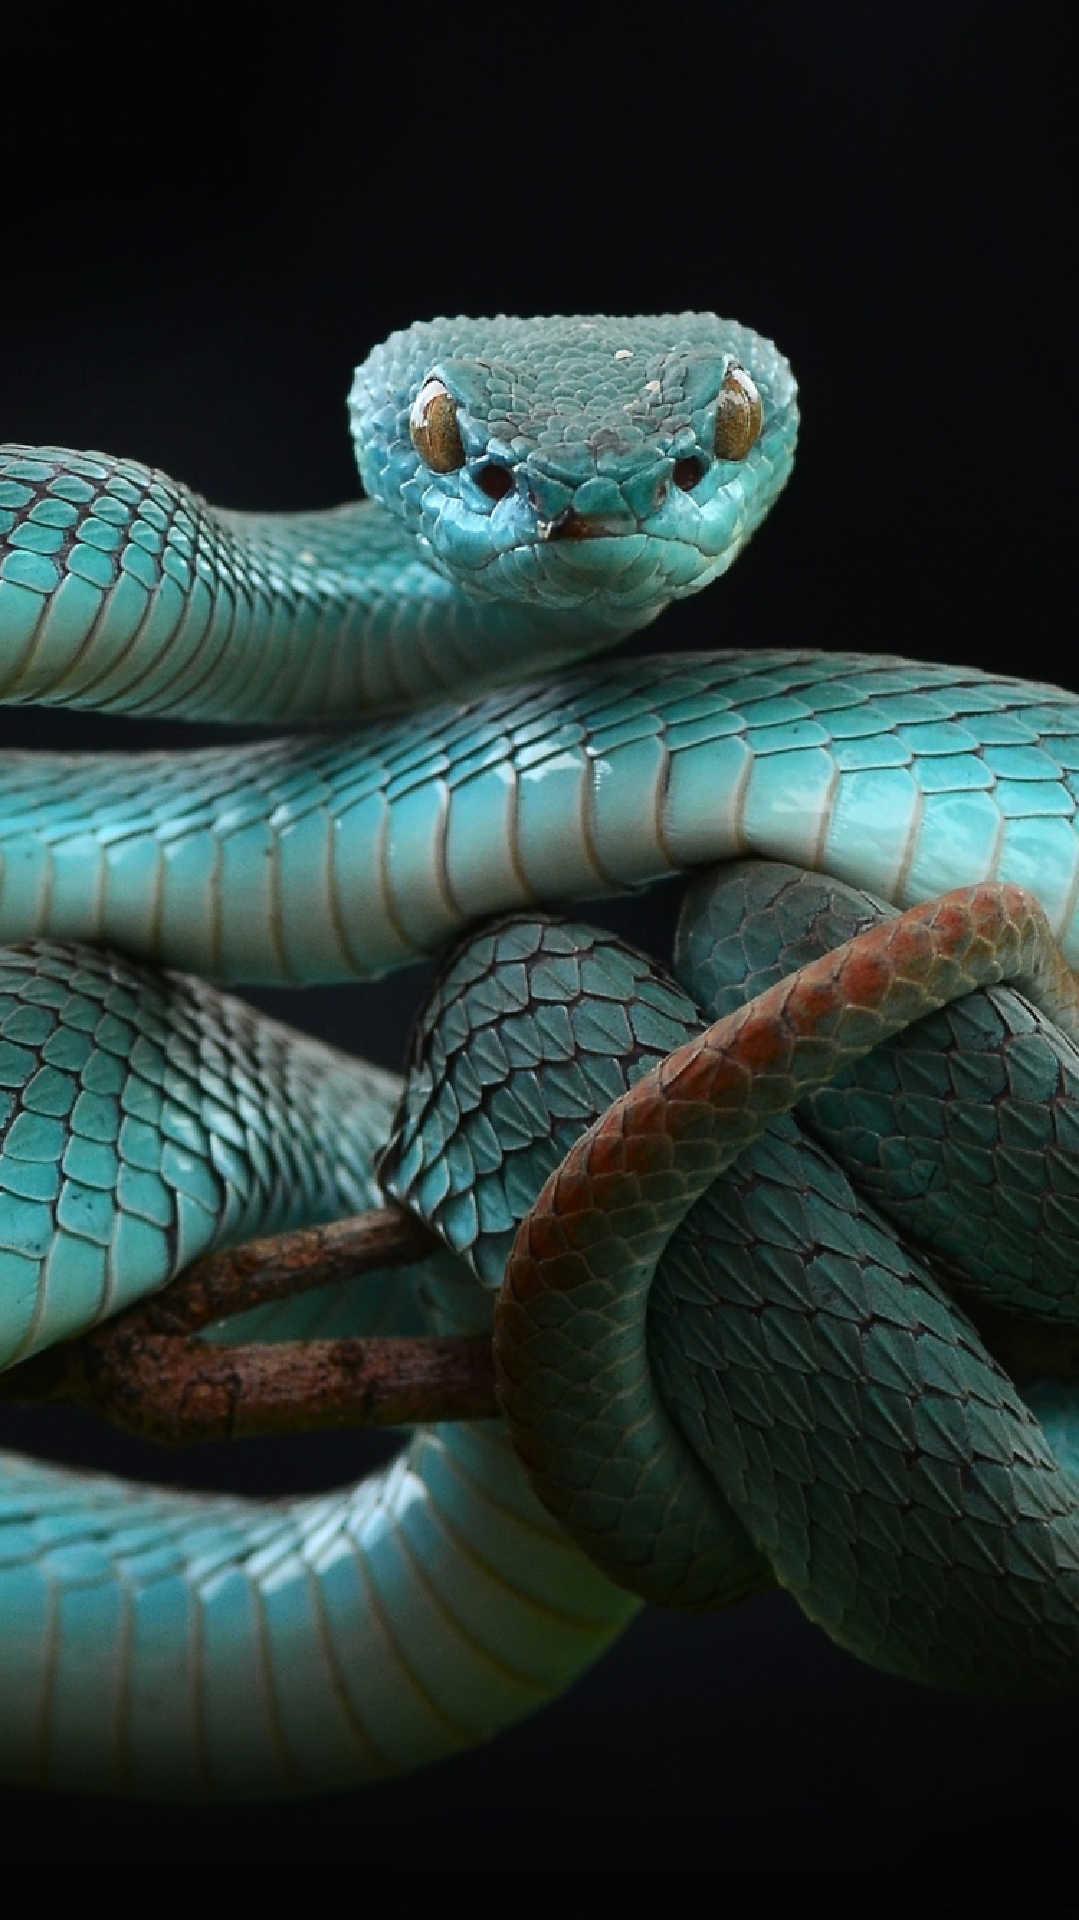 Змей на заставку телефона. Голубая куфия. Голубая гадюка. Тайская гадюка. Красивые змеи.